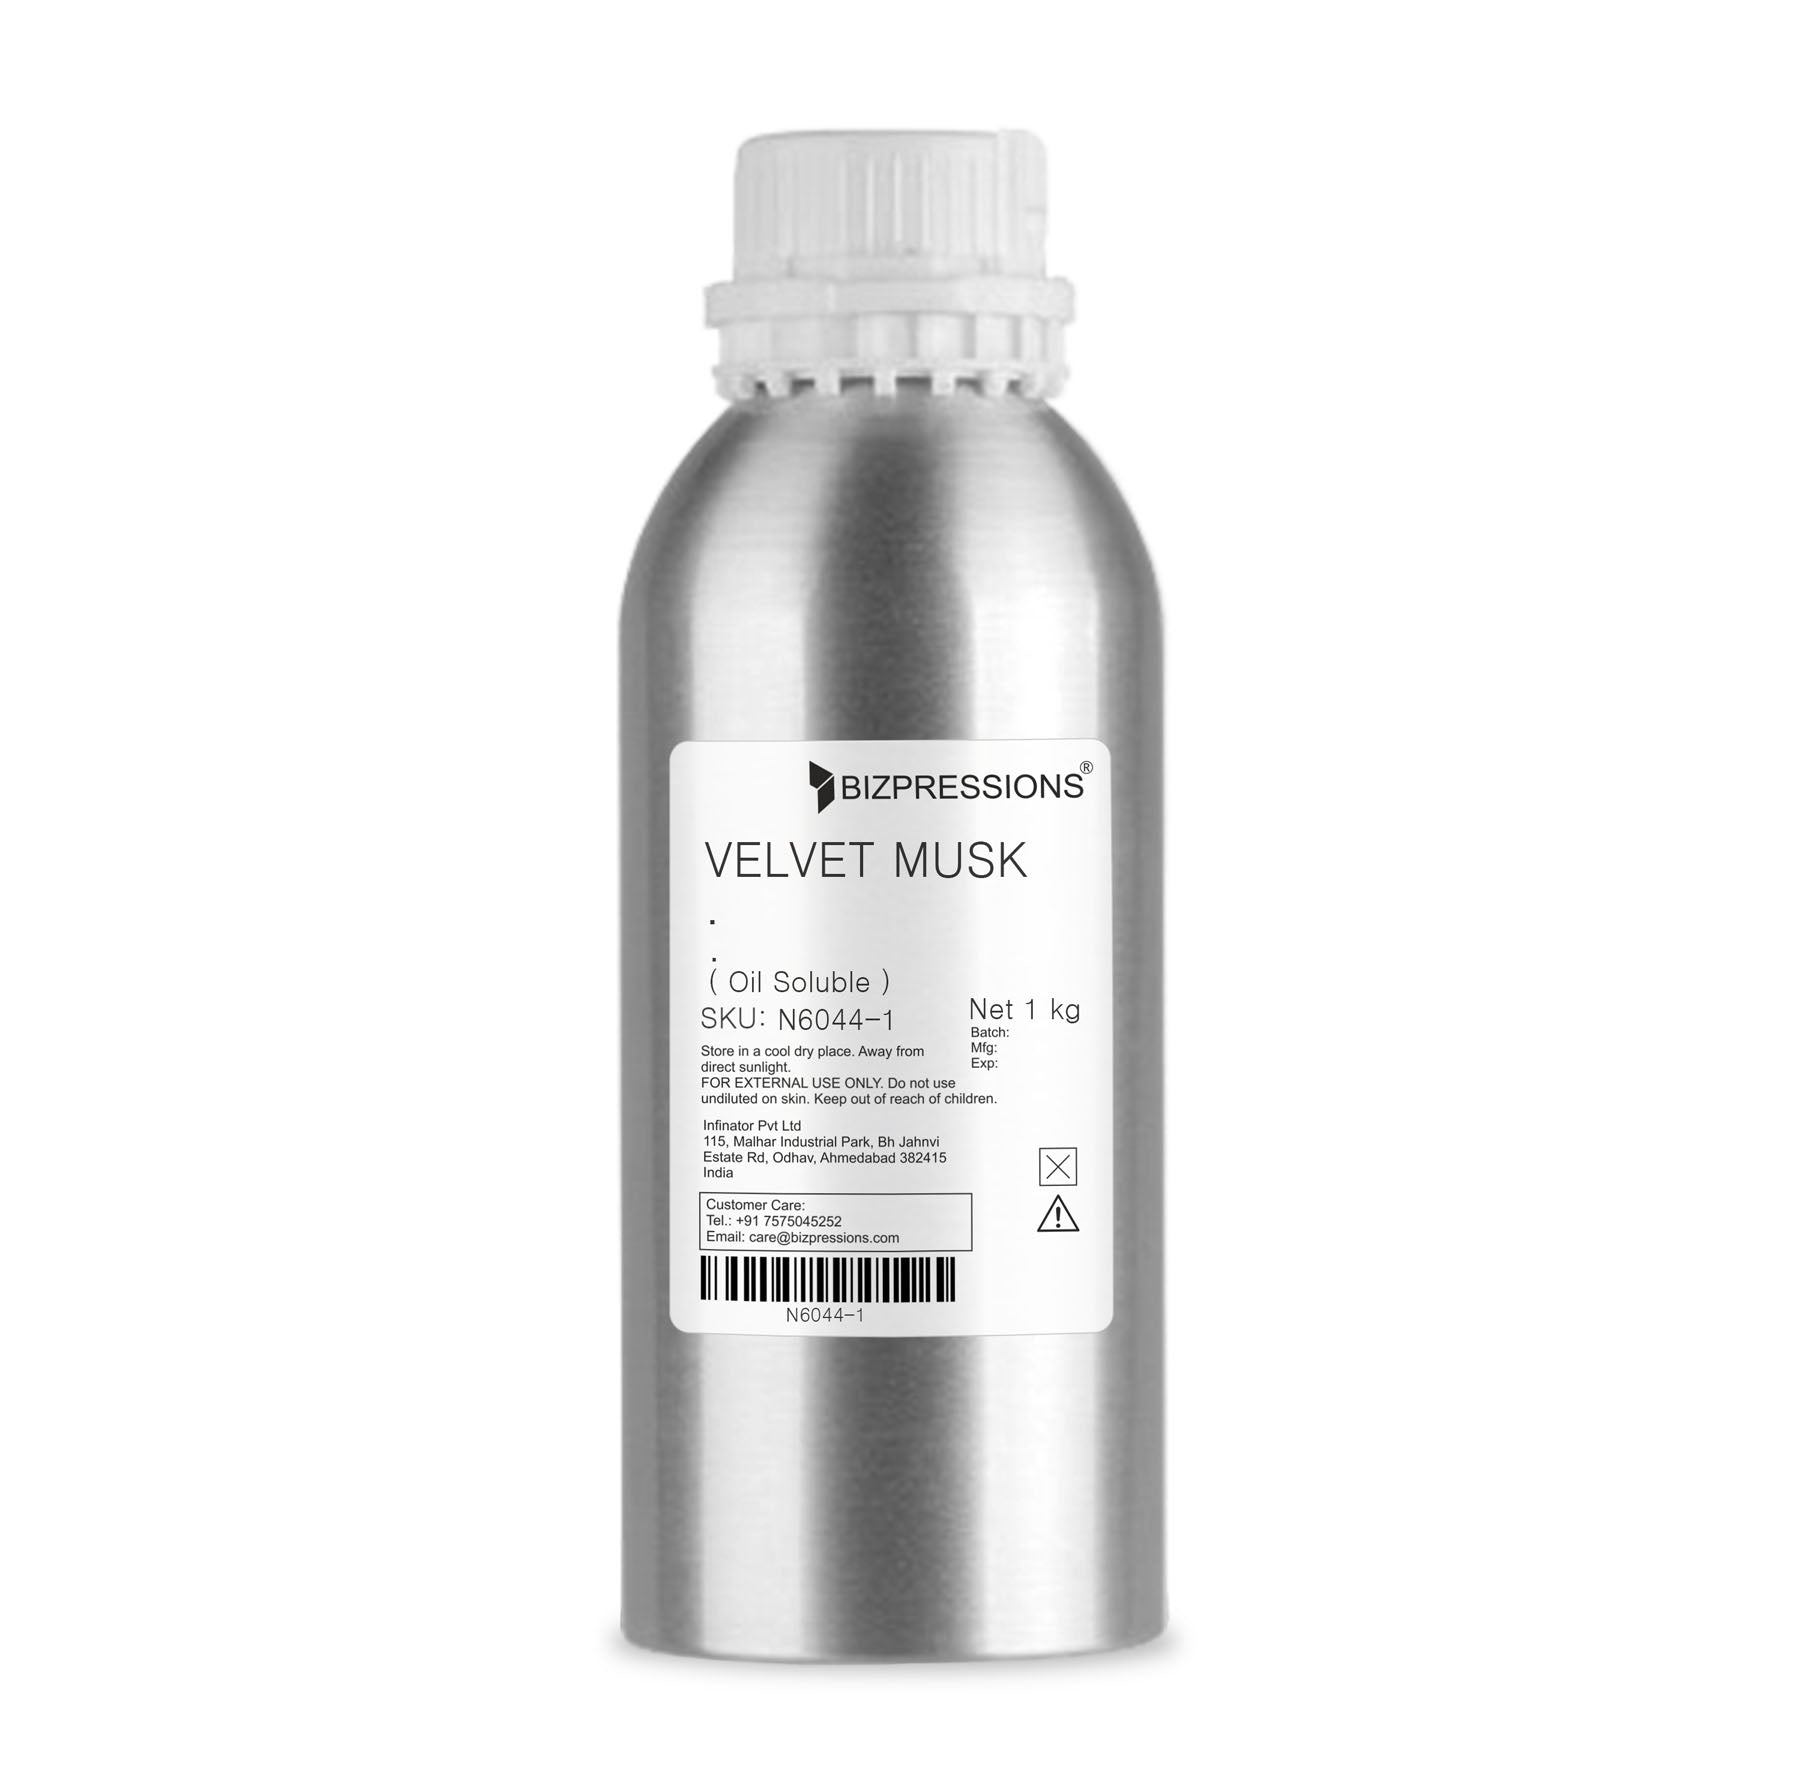 VELVET MUSK - Fragrance ( Oil Soluble ) - 1 kg